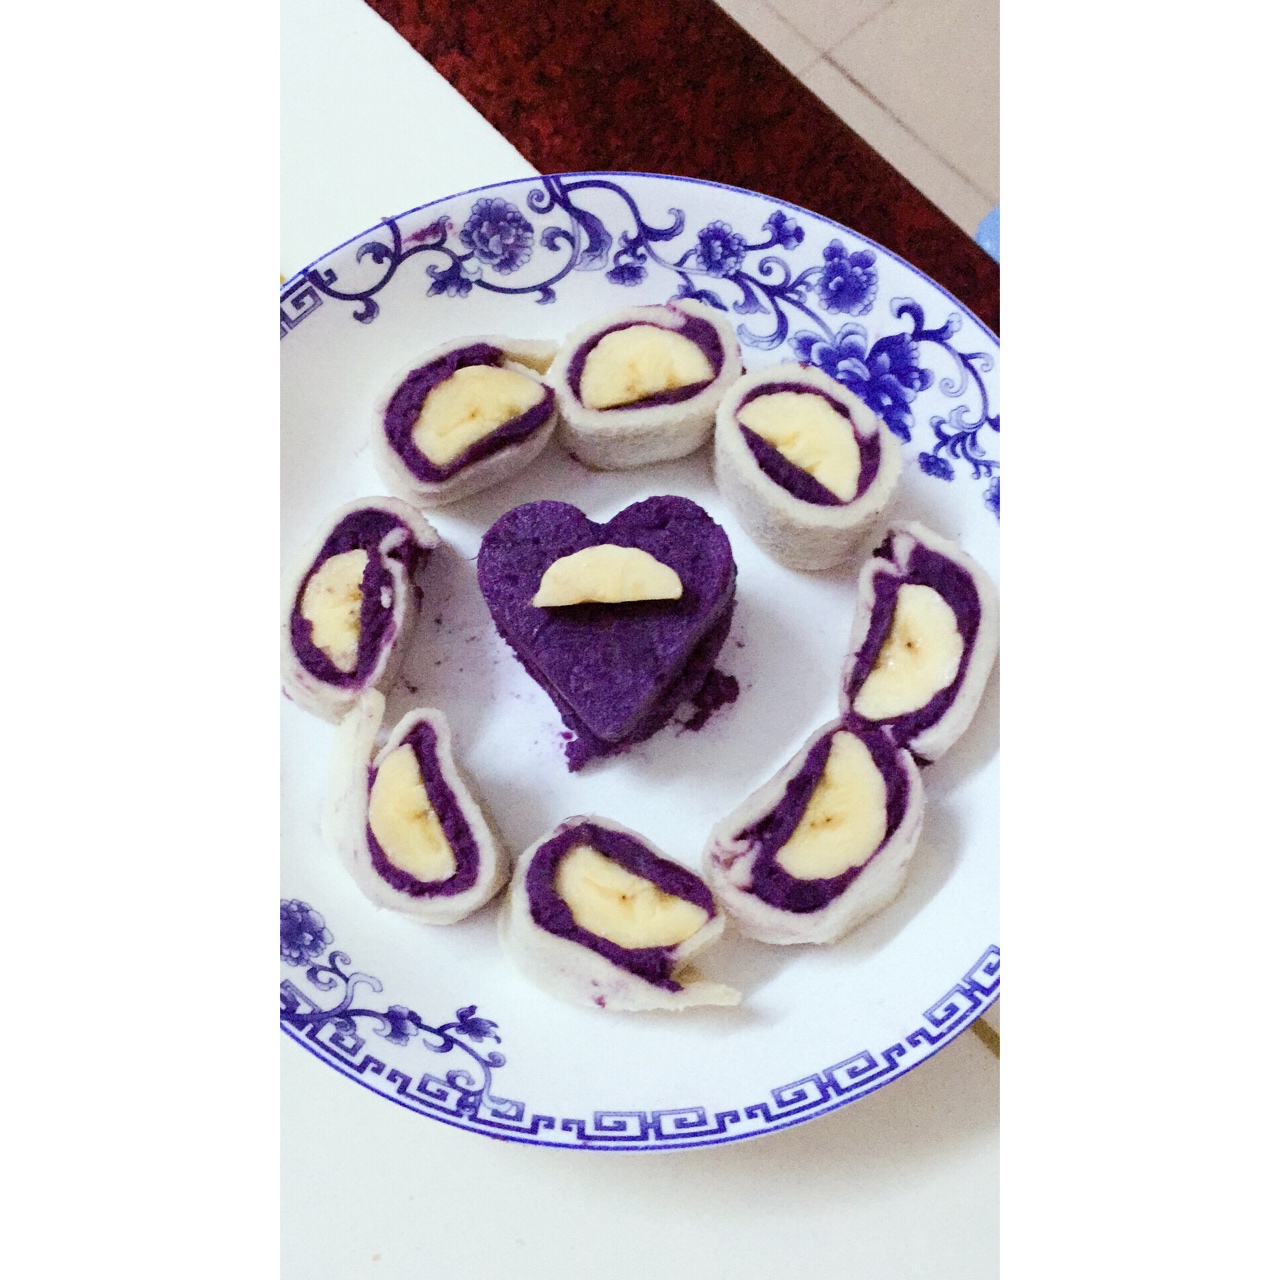 香蕉紫薯卷